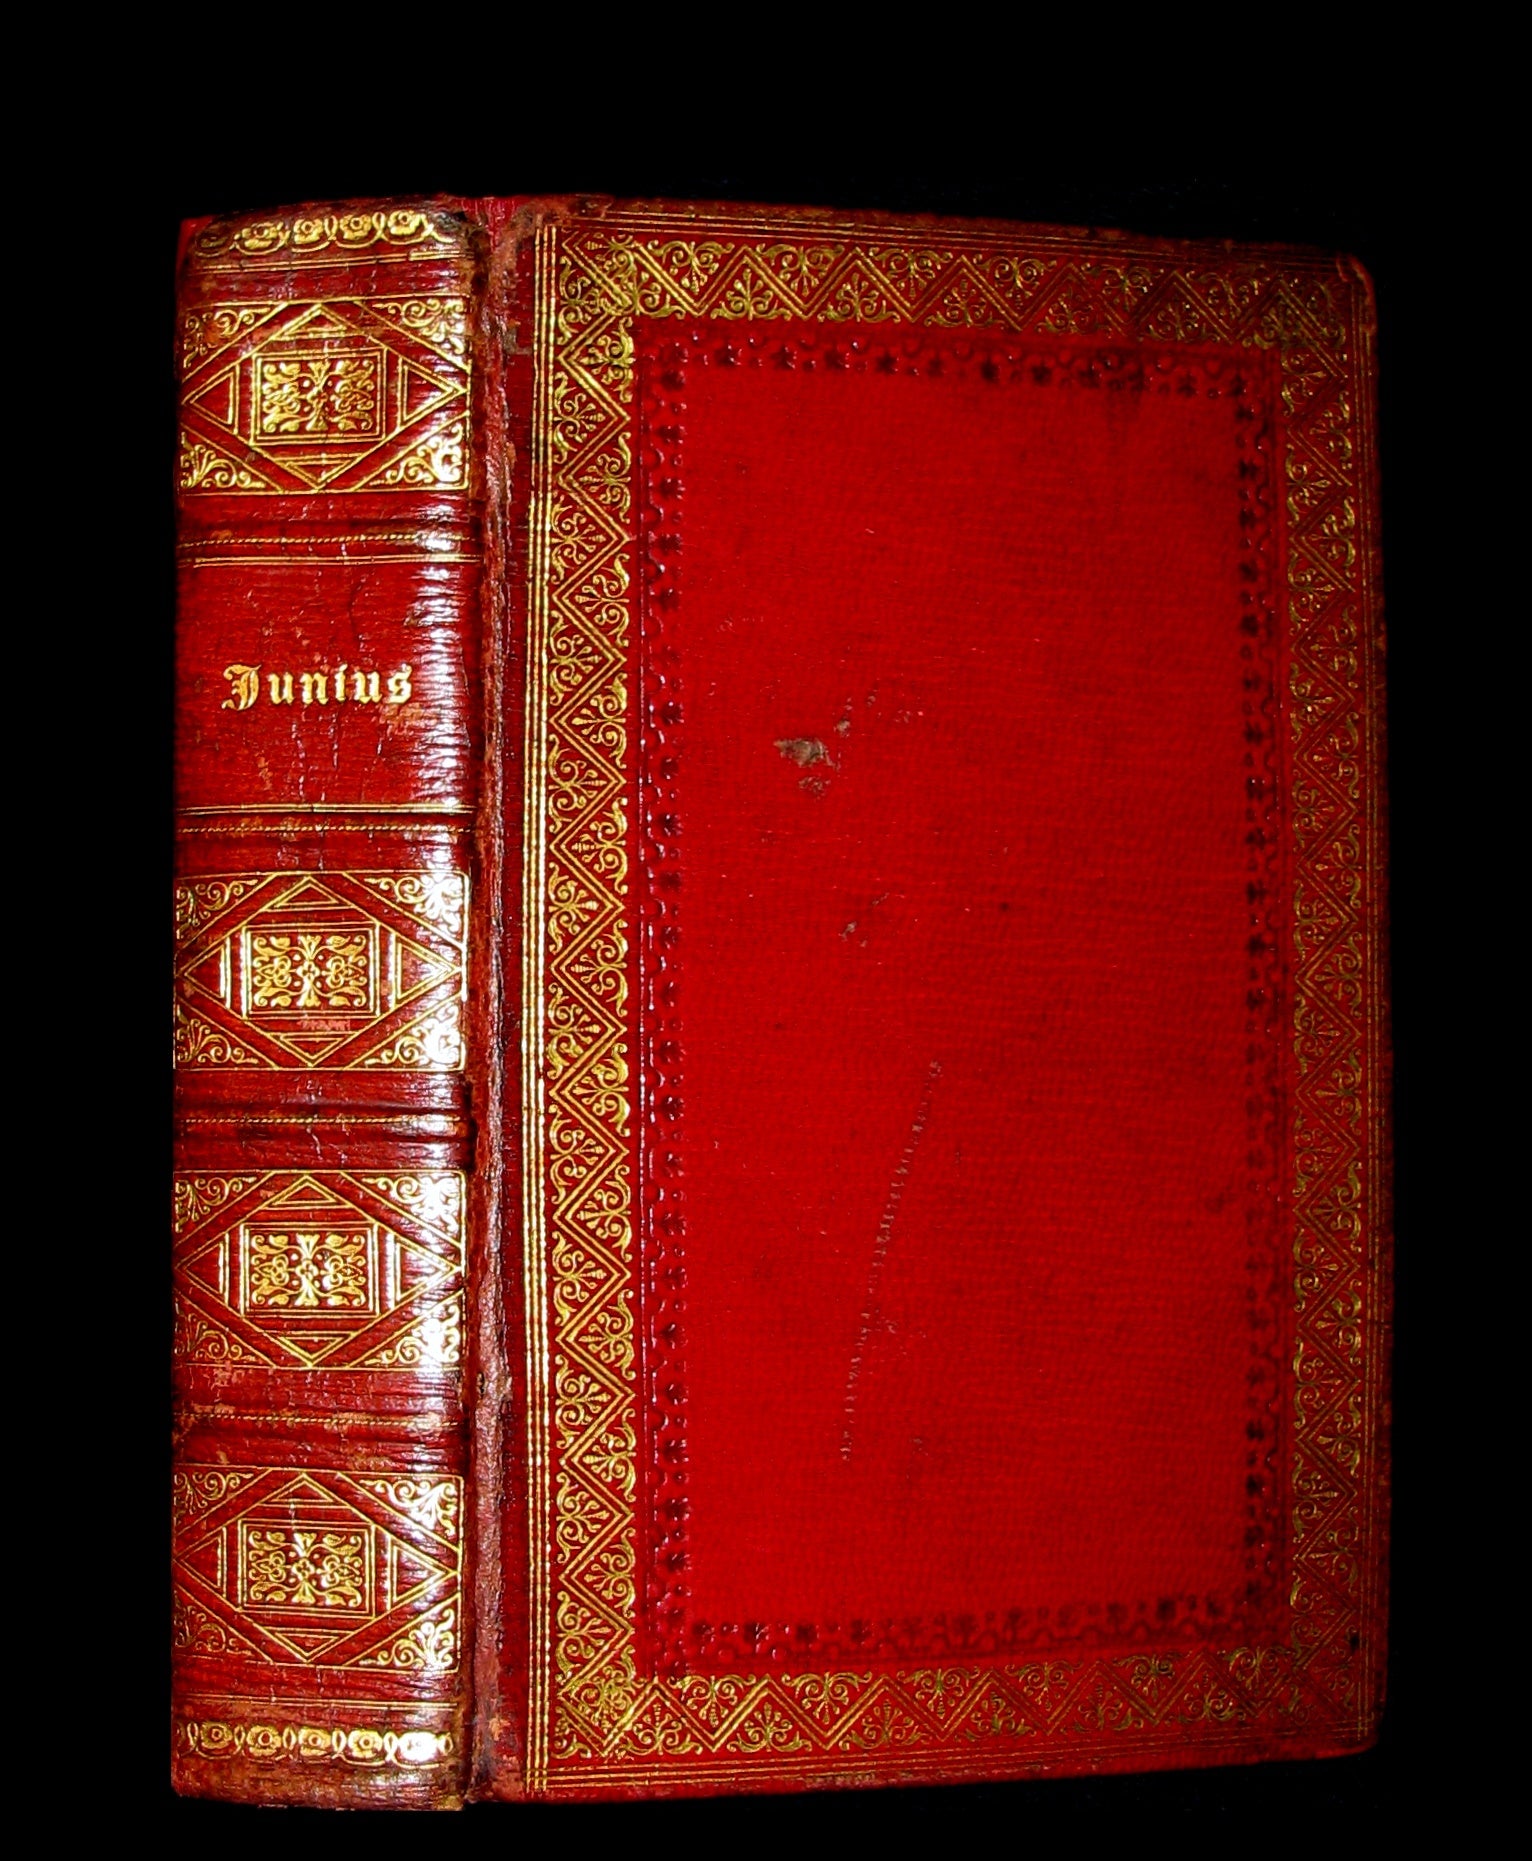 1820 Rare Book bound by Bumpus - LETTERS of JUNIUS or Junius: Stat nominis umbra.